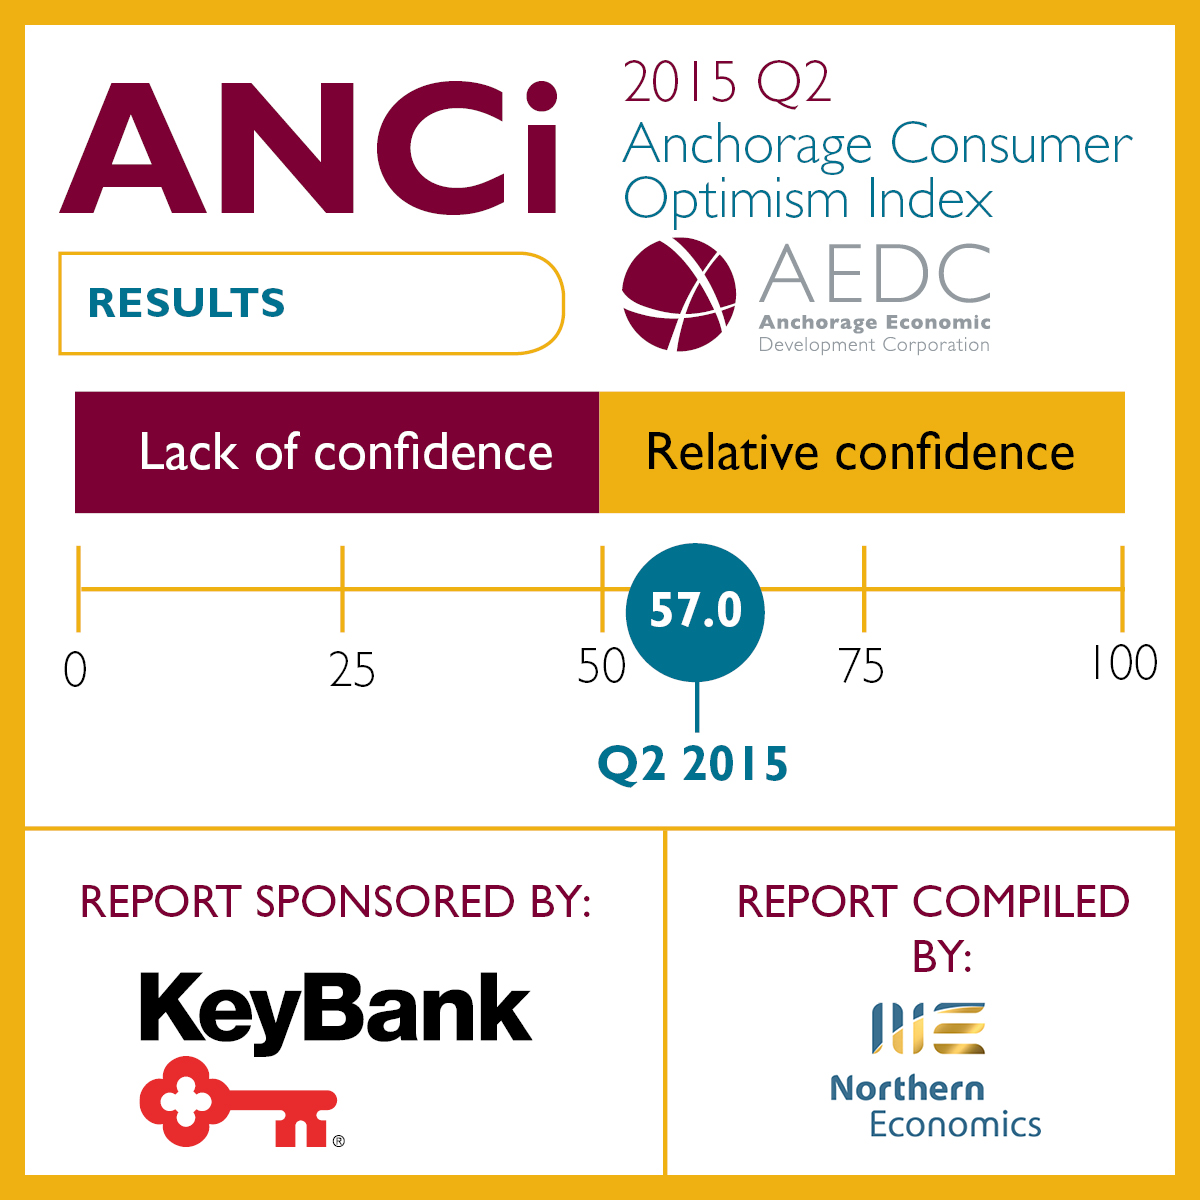 Anchorage Consumer Optimism Index: 2015 Q2